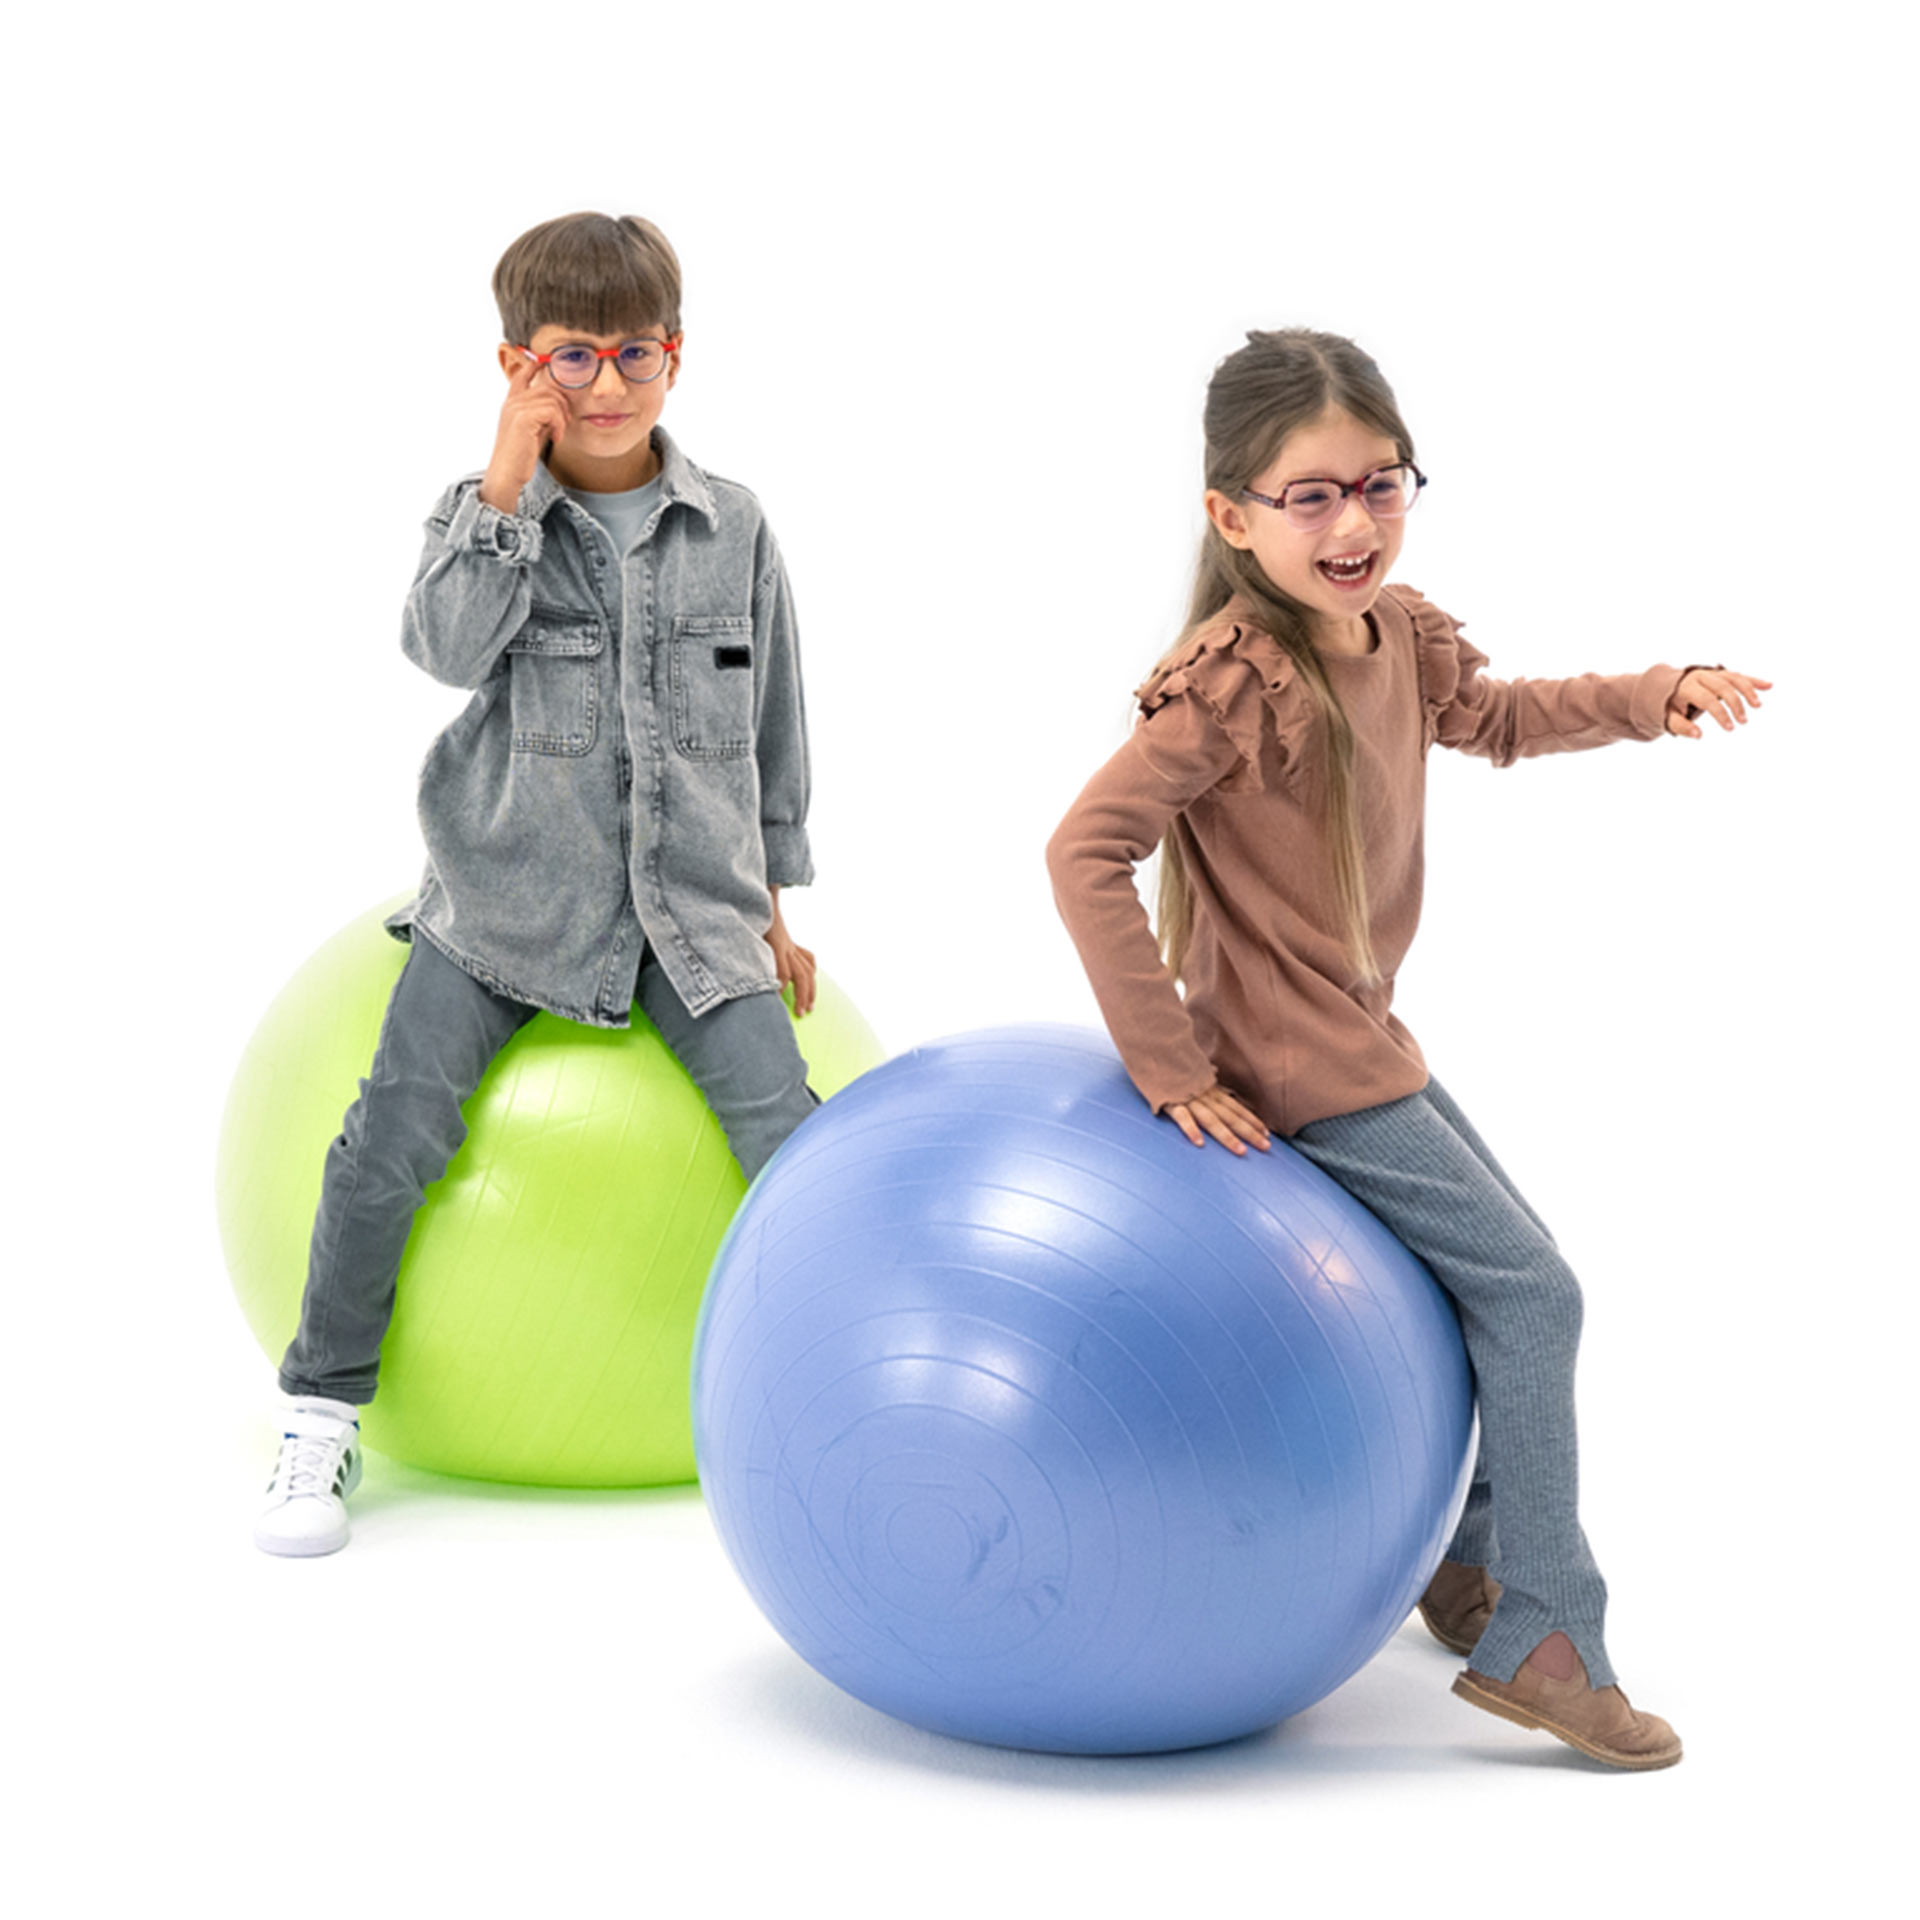 En dreng og en pige, der begge bærer briller, morer sig med at hoppe på hoppebolde.